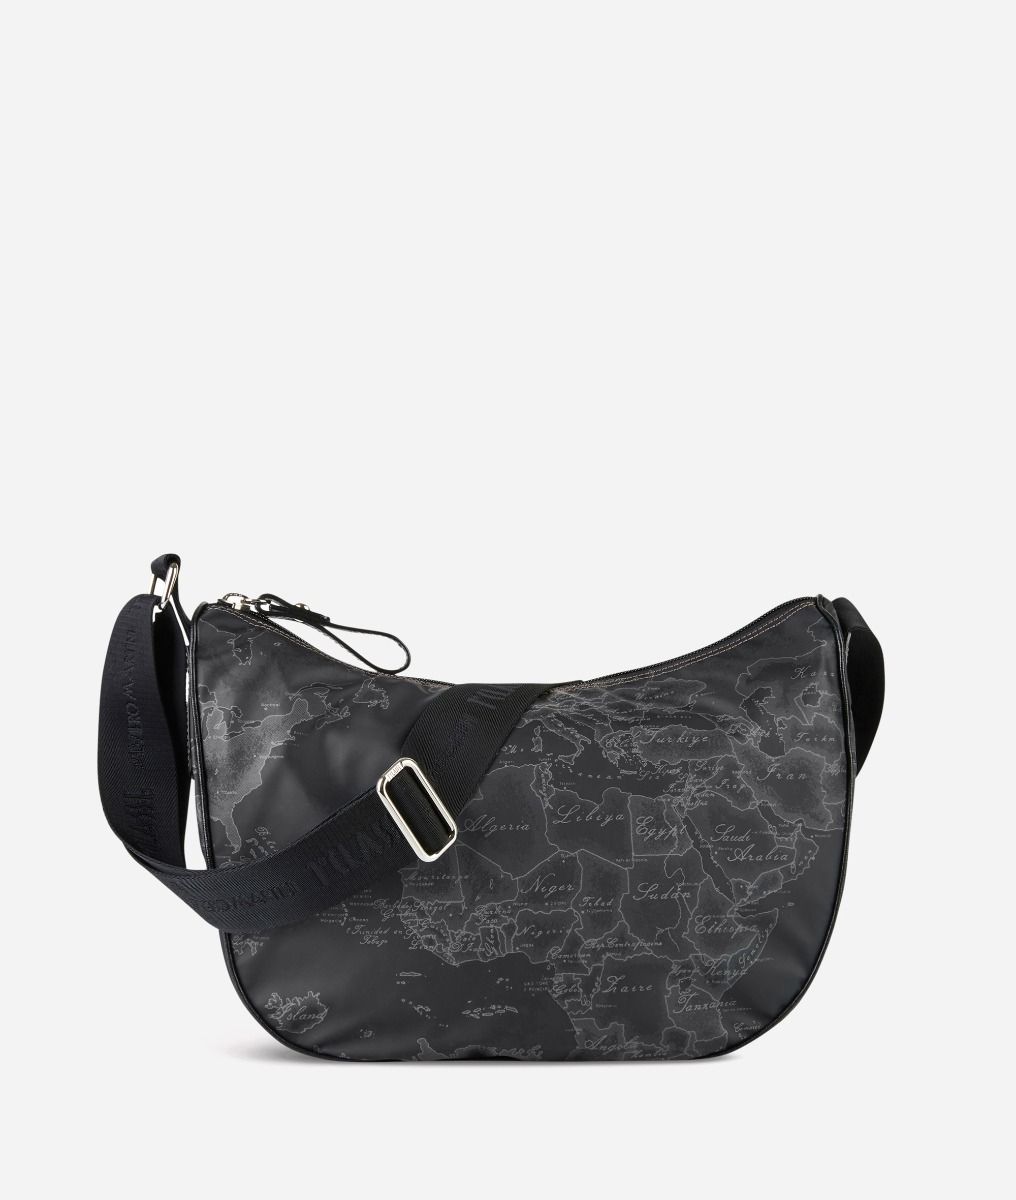 Geo Soft Black Medium half-moon handbag,front